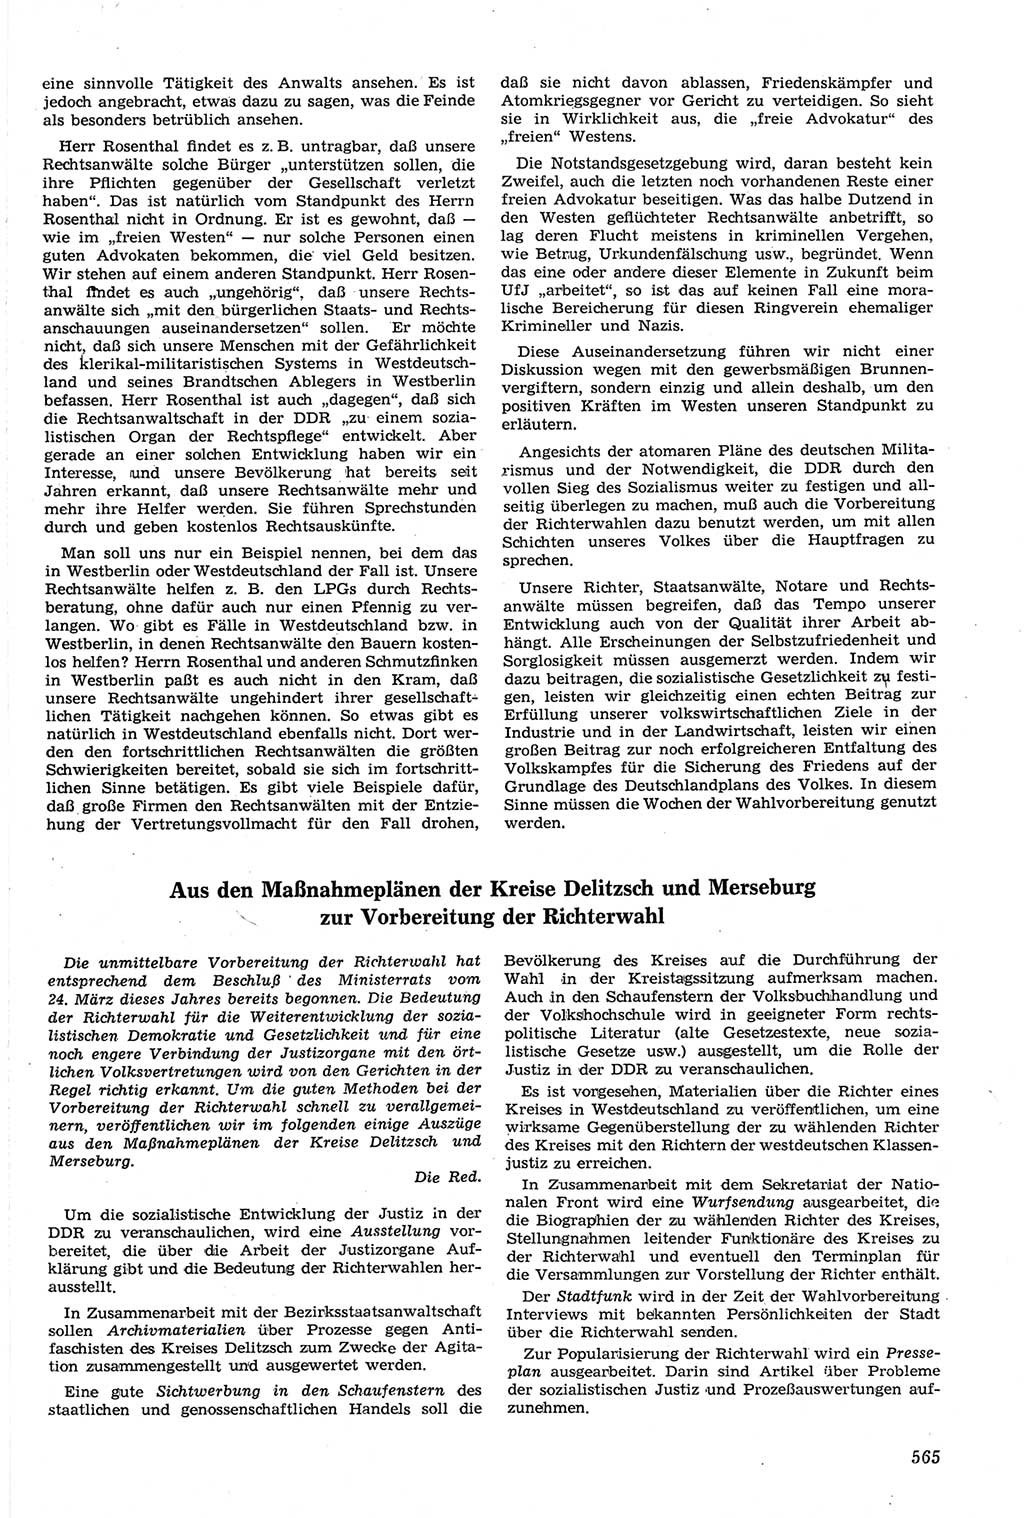 Neue Justiz (NJ), Zeitschrift für Recht und Rechtswissenschaft [Deutsche Demokratische Republik (DDR)], 14. Jahrgang 1960, Seite 565 (NJ DDR 1960, S. 565)